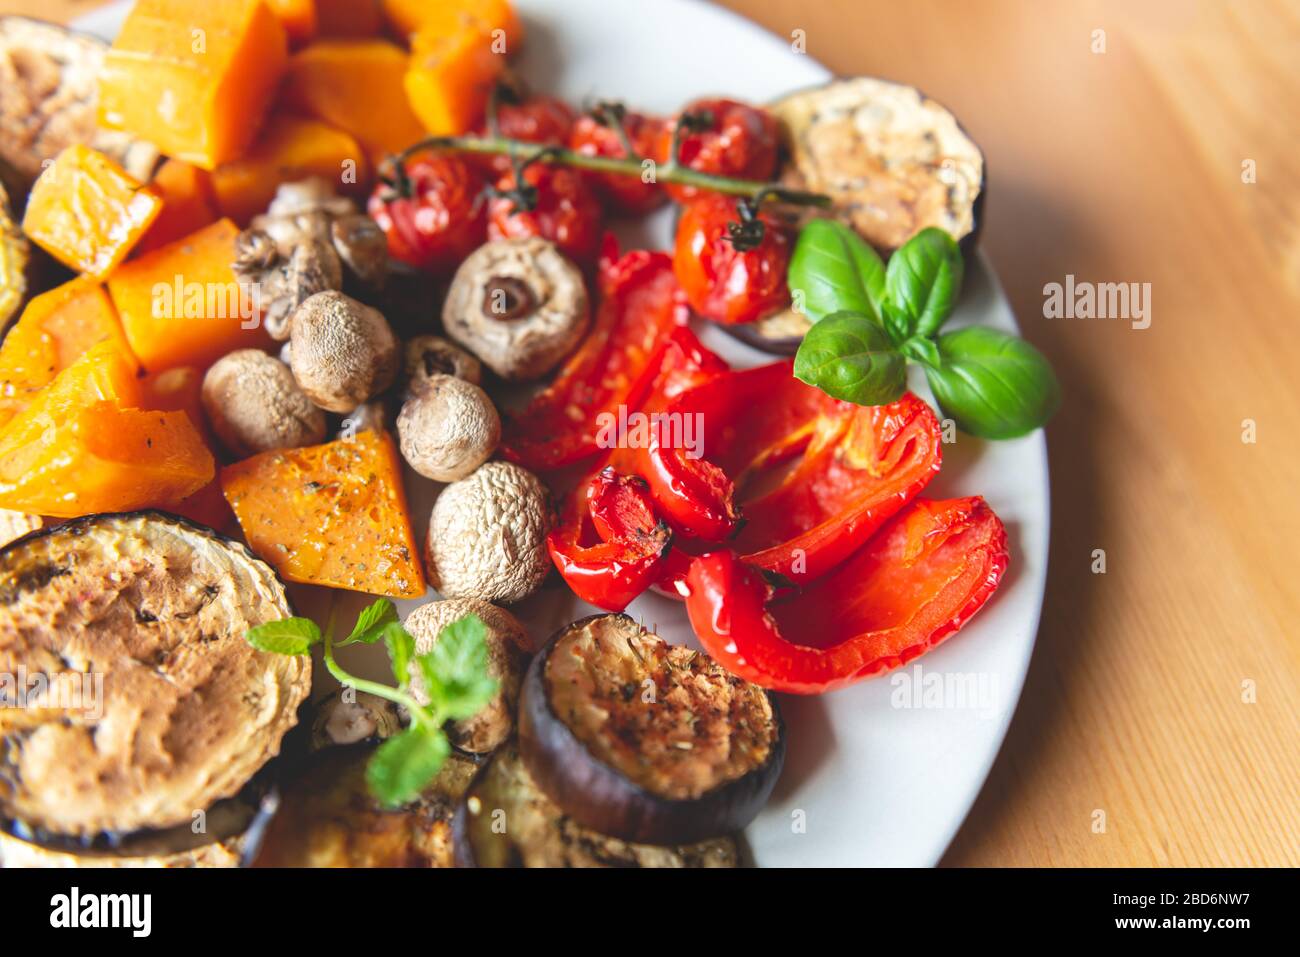 Einfaches gesundes Dinner mit Detox aus verschiedenen Gemüsesorten wie Aubergine, rotem Pfeffer, Kirschtomaten und Butternusskürbis Stockfoto